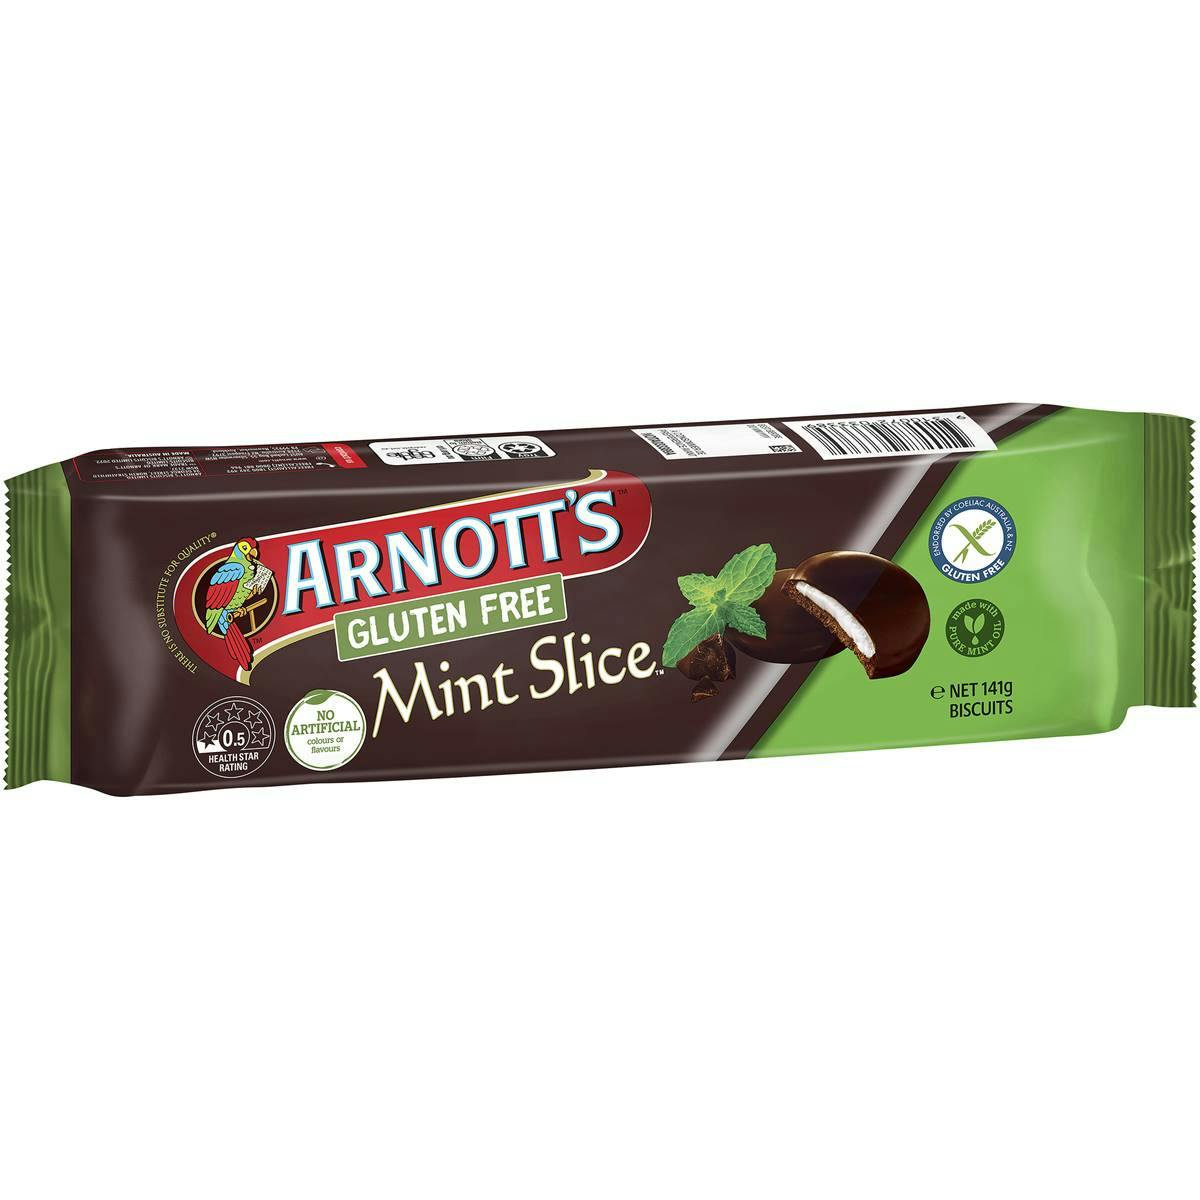 Arnott's Gluten Free Mint Slice Biscuits